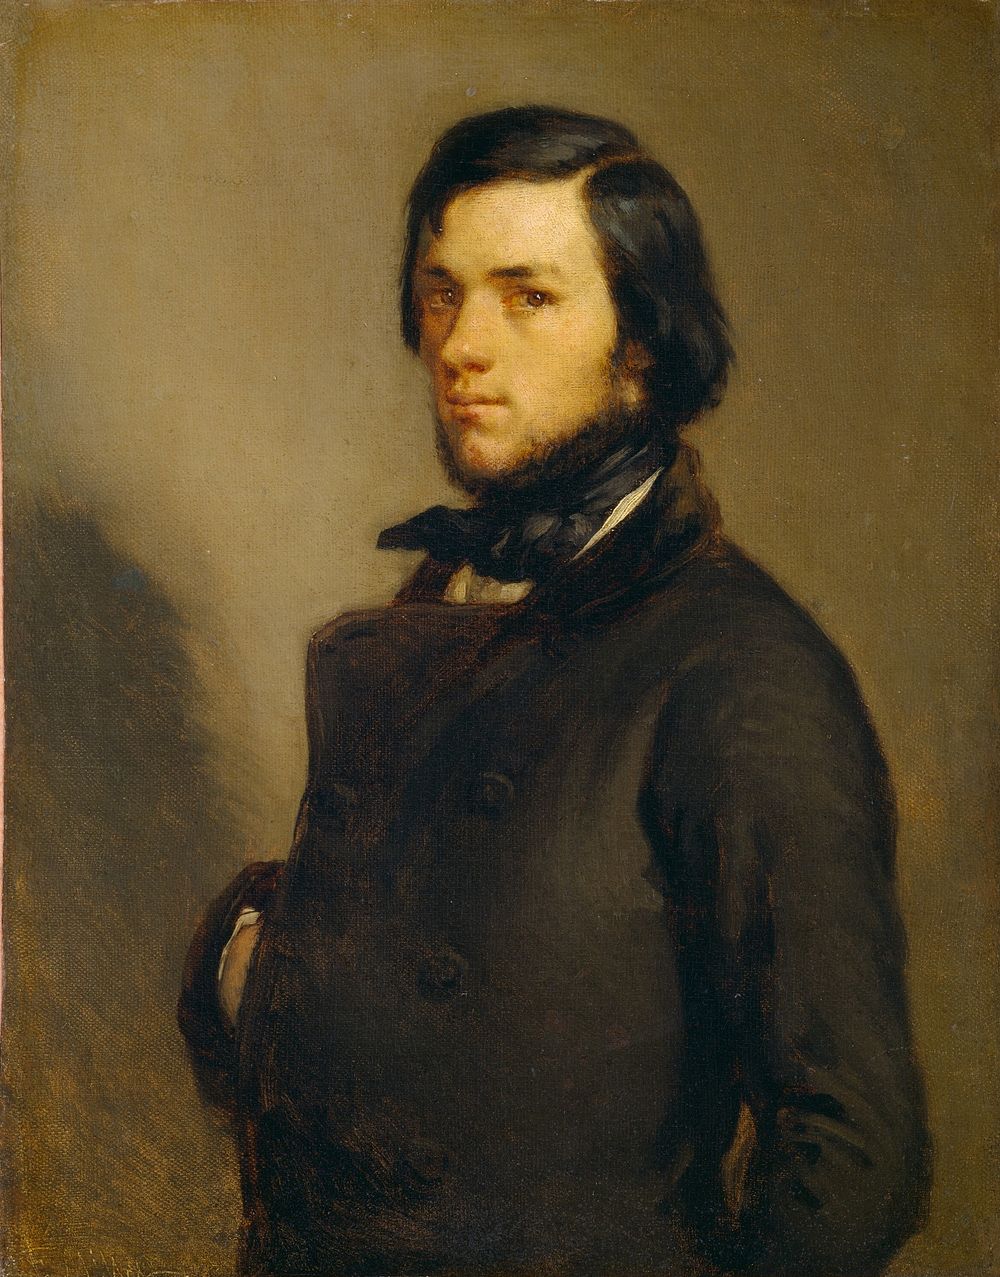 Portrait of a Man (c. 1845) by Jean-Fran&ccedil;ois Millet.